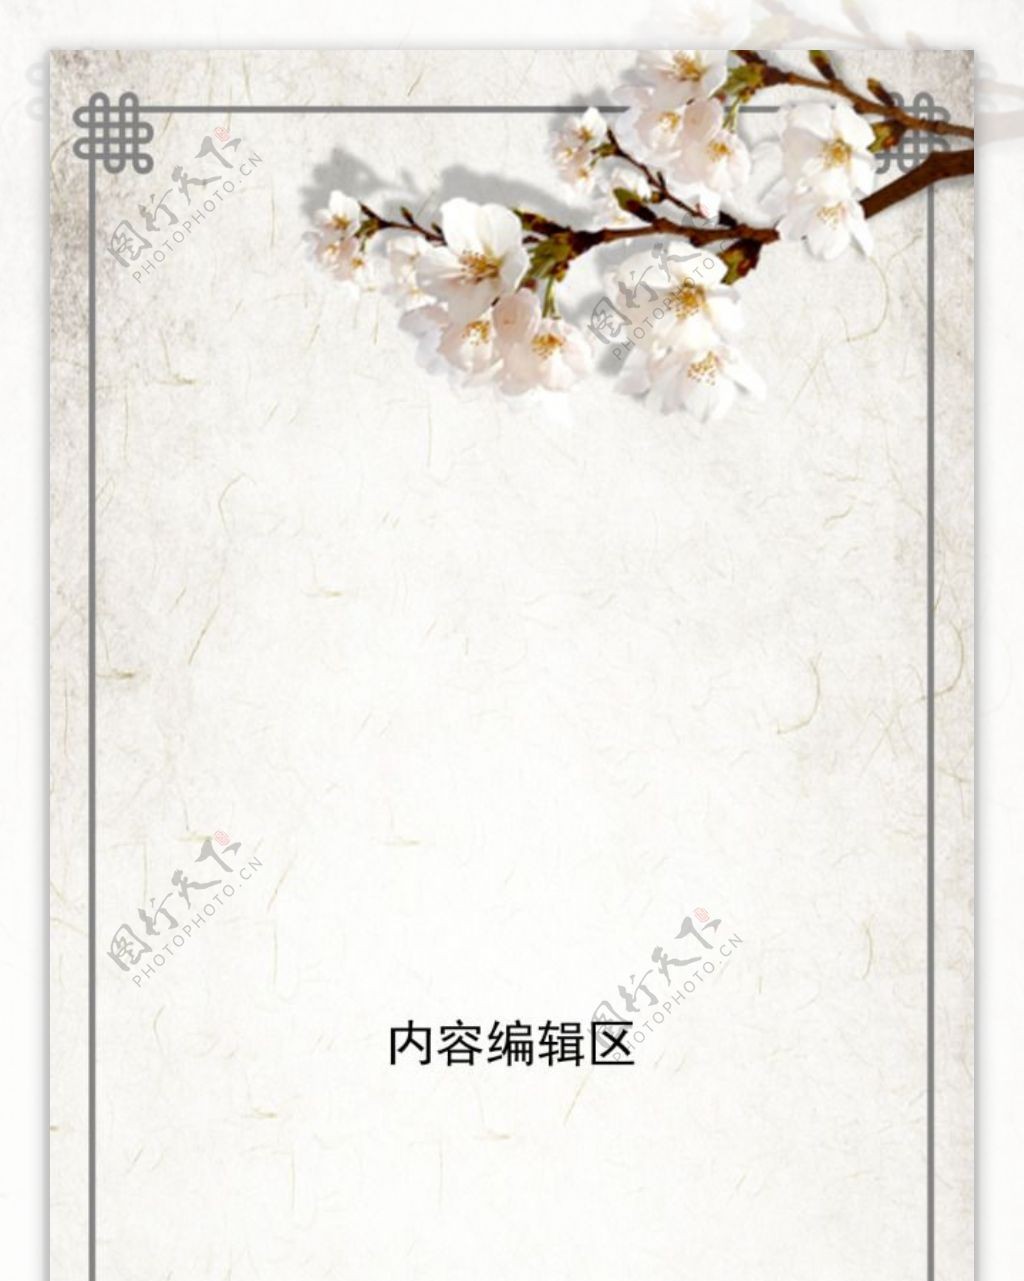 精美中国风展架设计模板素材画面海报